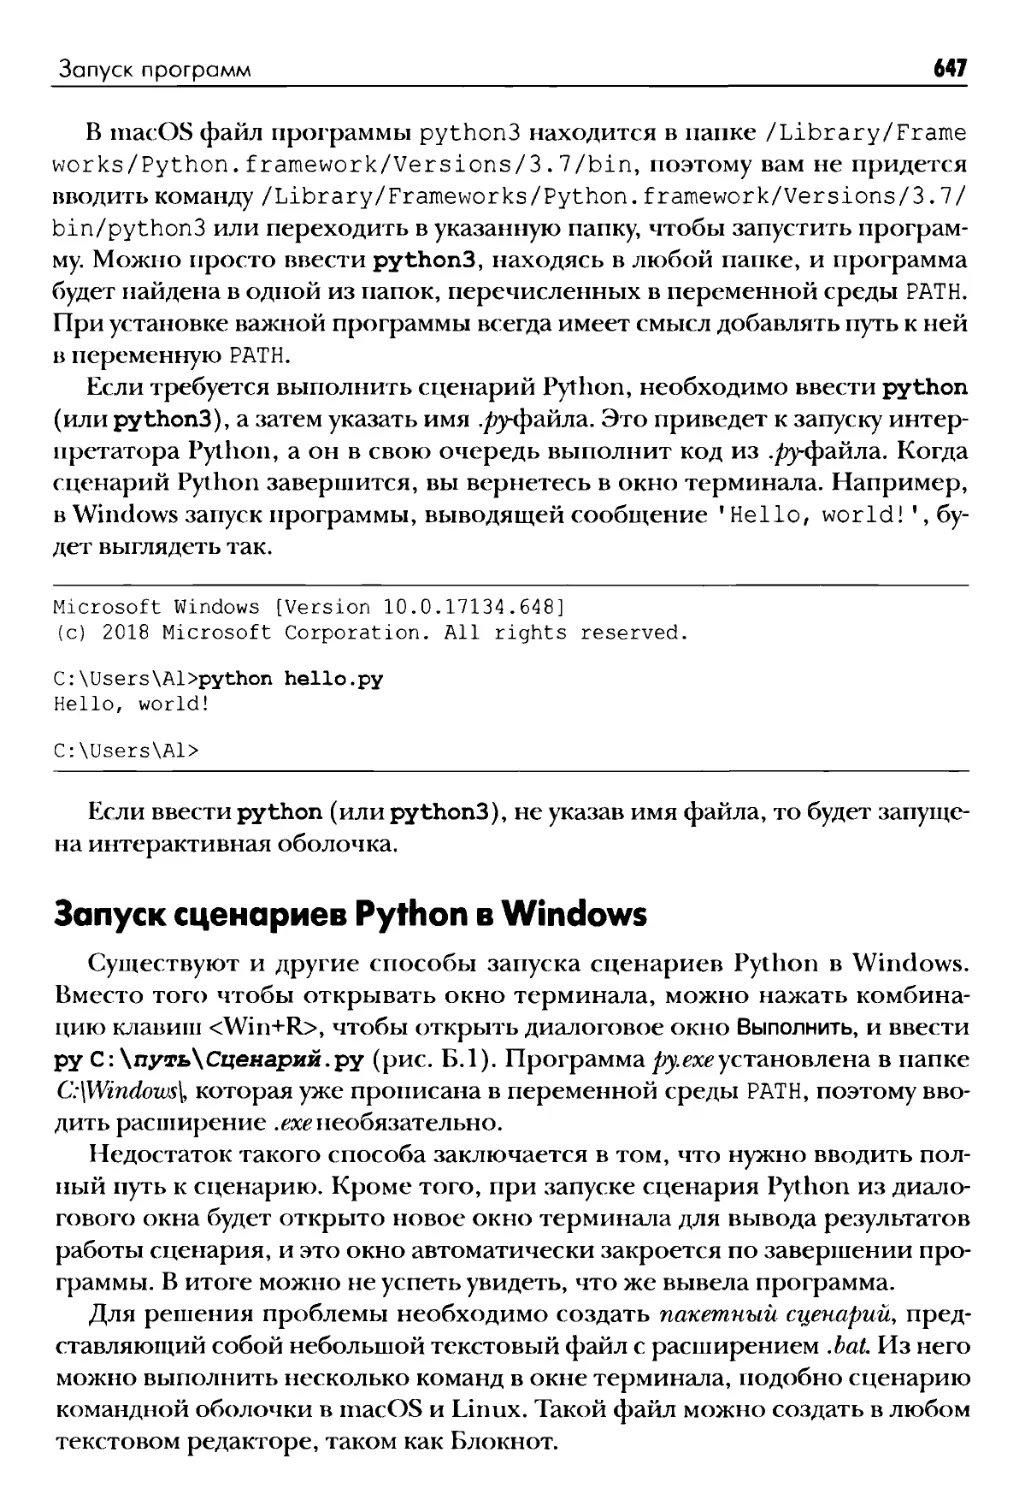 Запуск сценариев Python в Windows